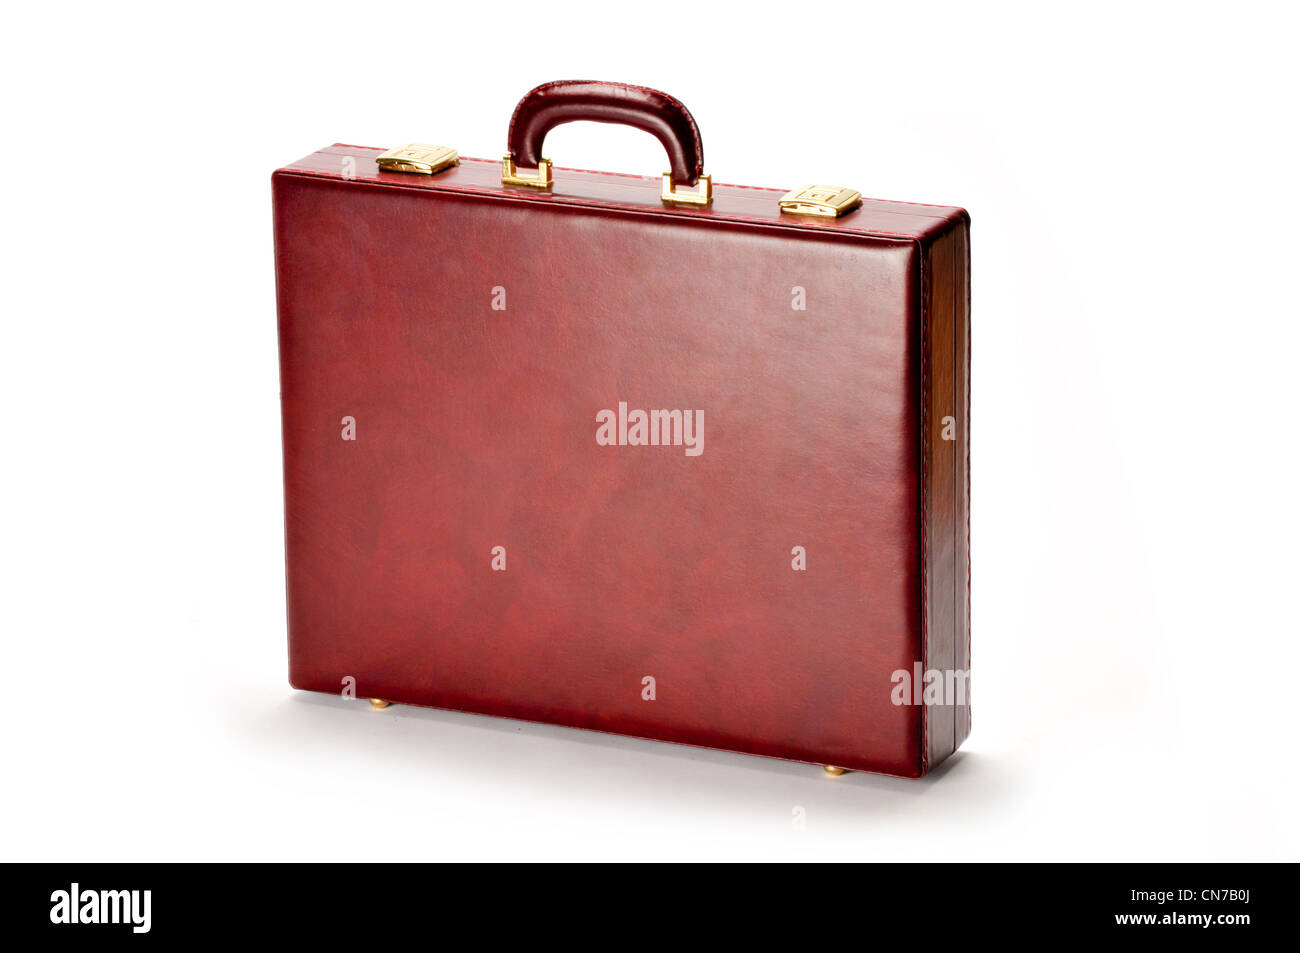 Borgogna valigetta marrone su sfondo bianco Foto Stock